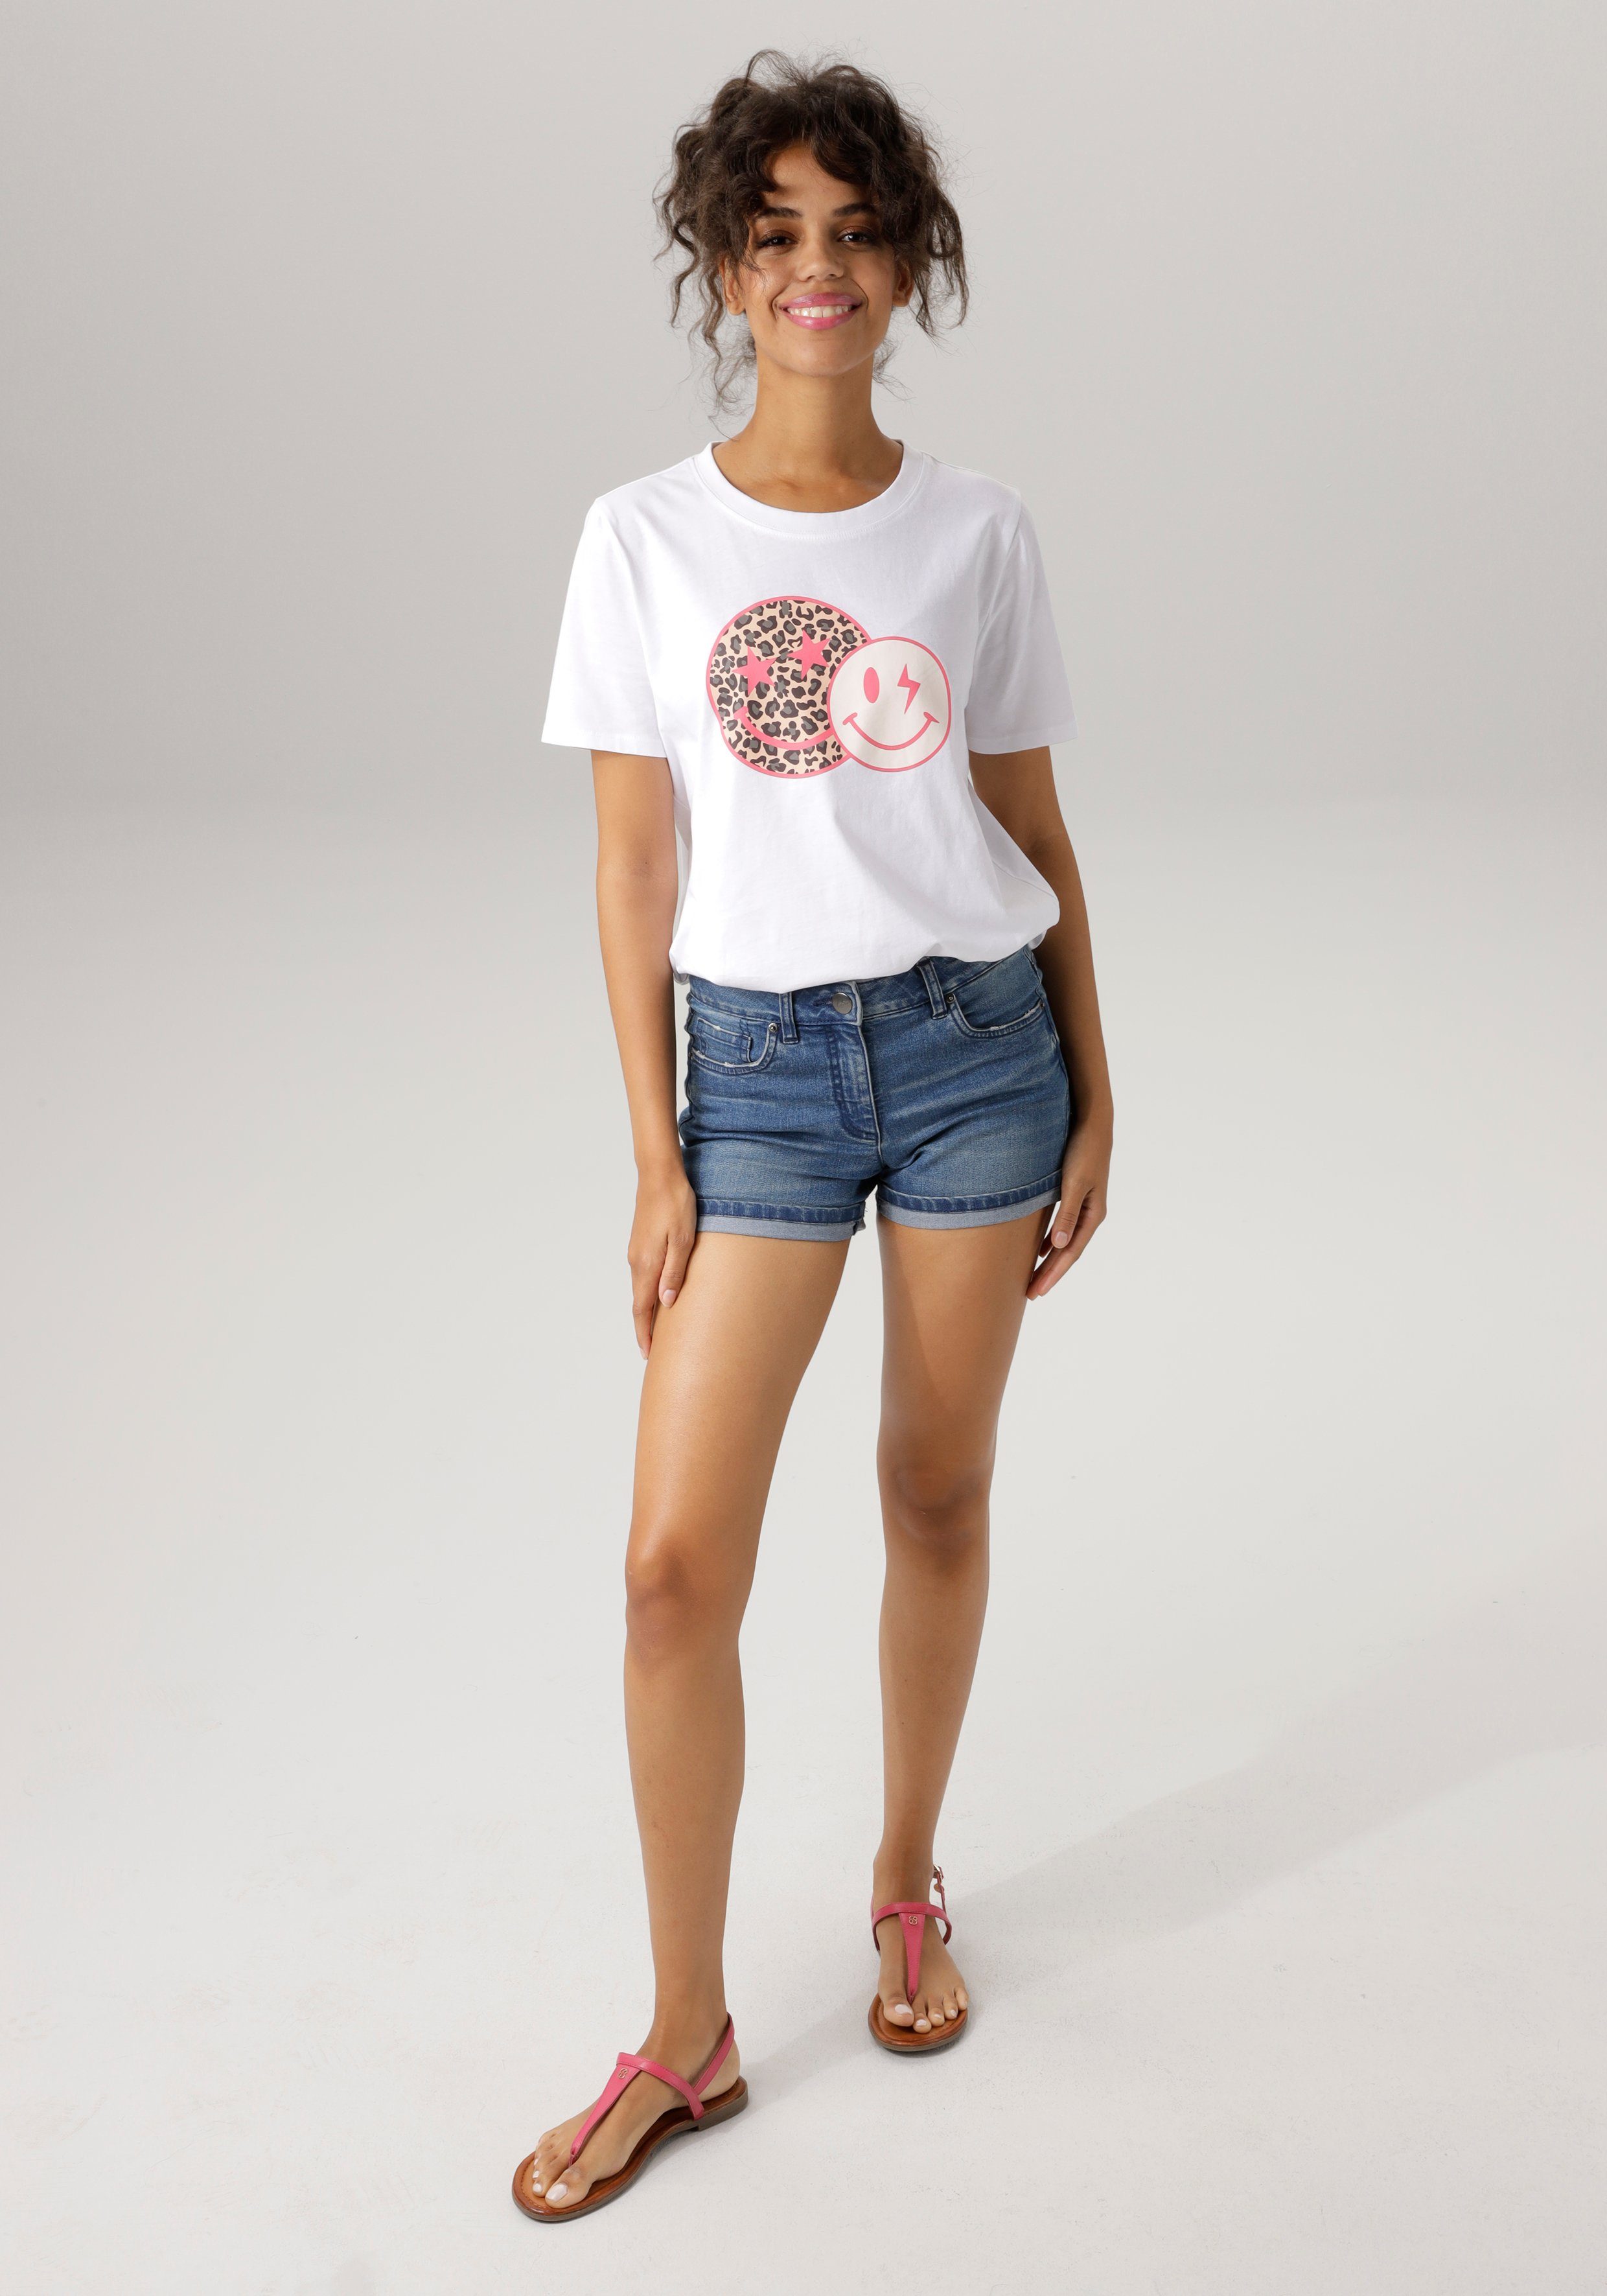 coolen mit CASUAL T-Shirt weiß-pink-beige-schwarz-grau Aniston bedruckt Smileys